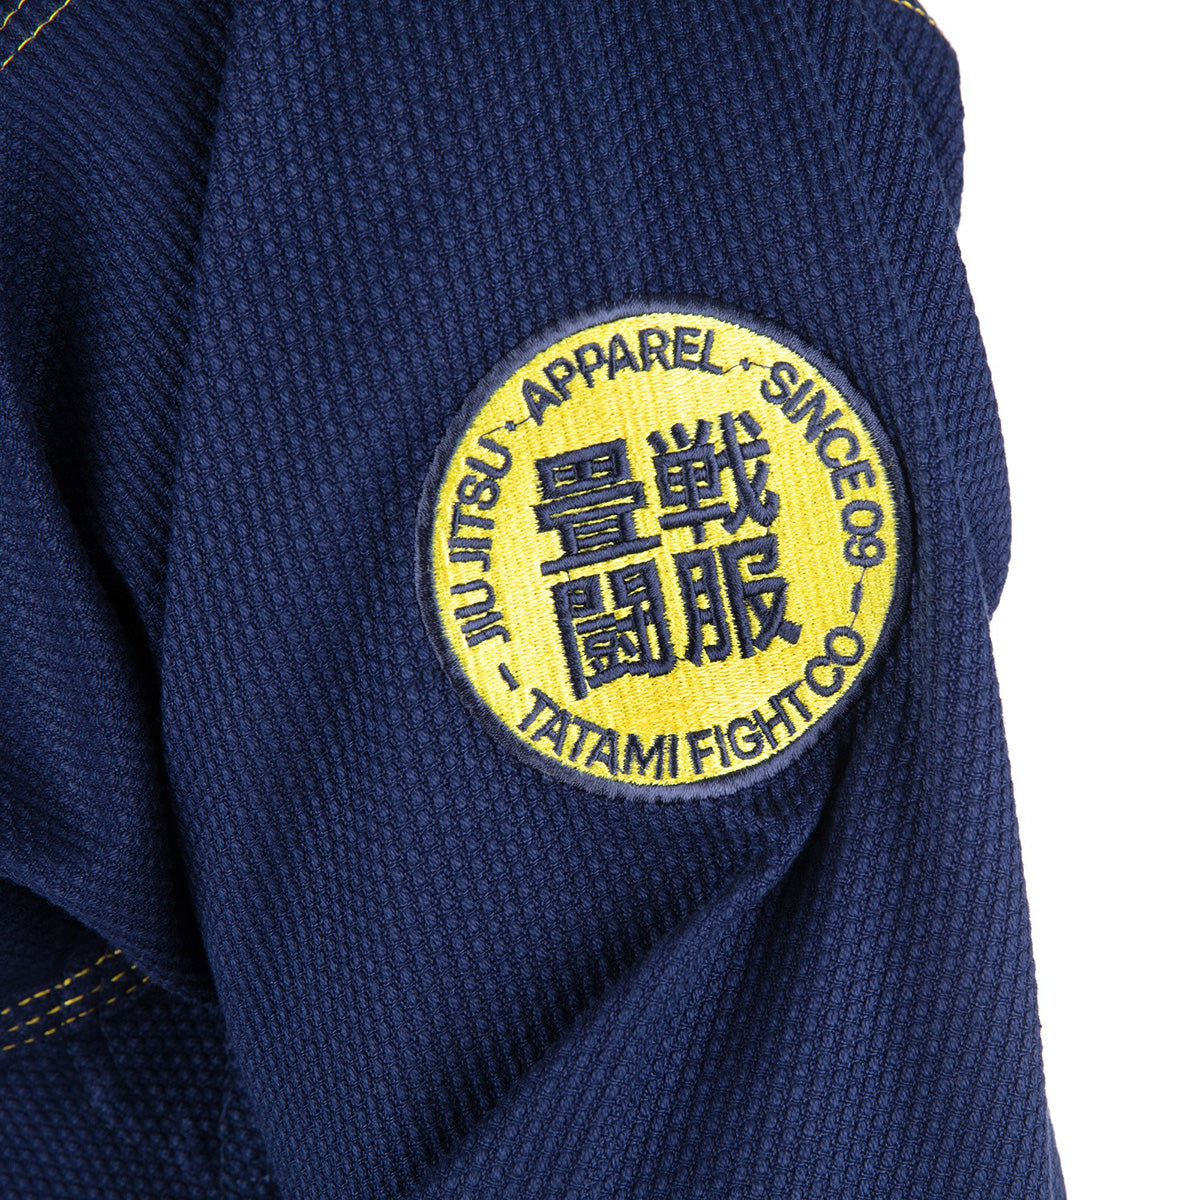 Tatami Fightwear Essential 2.0 BJJ Gi - Navy Tatami Fightwear